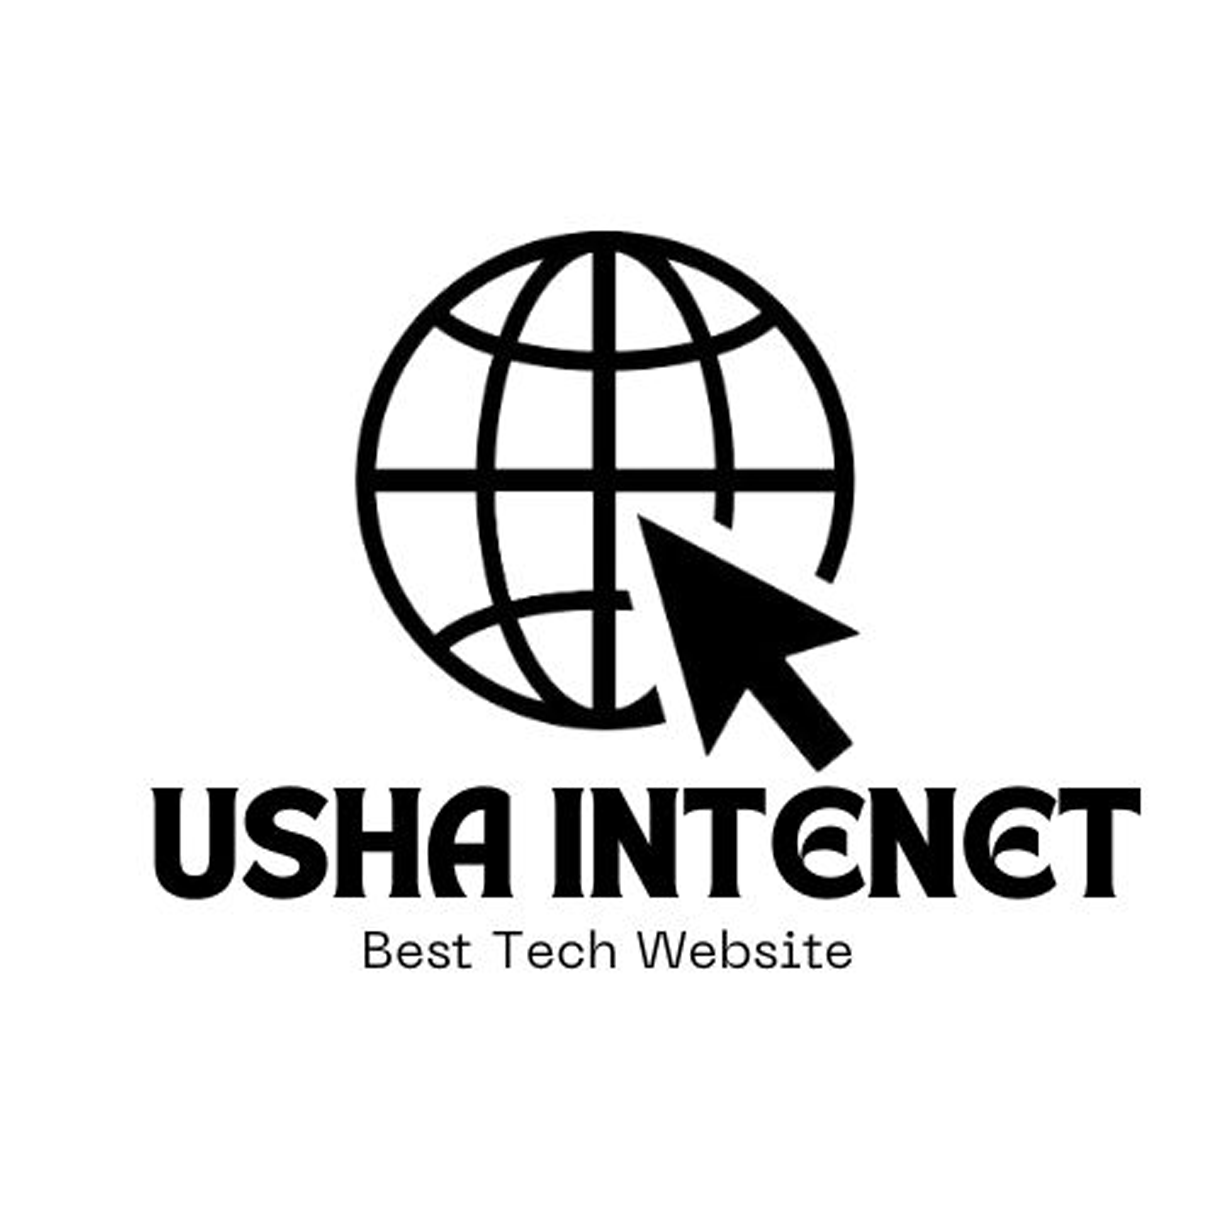 USHA INTERNET